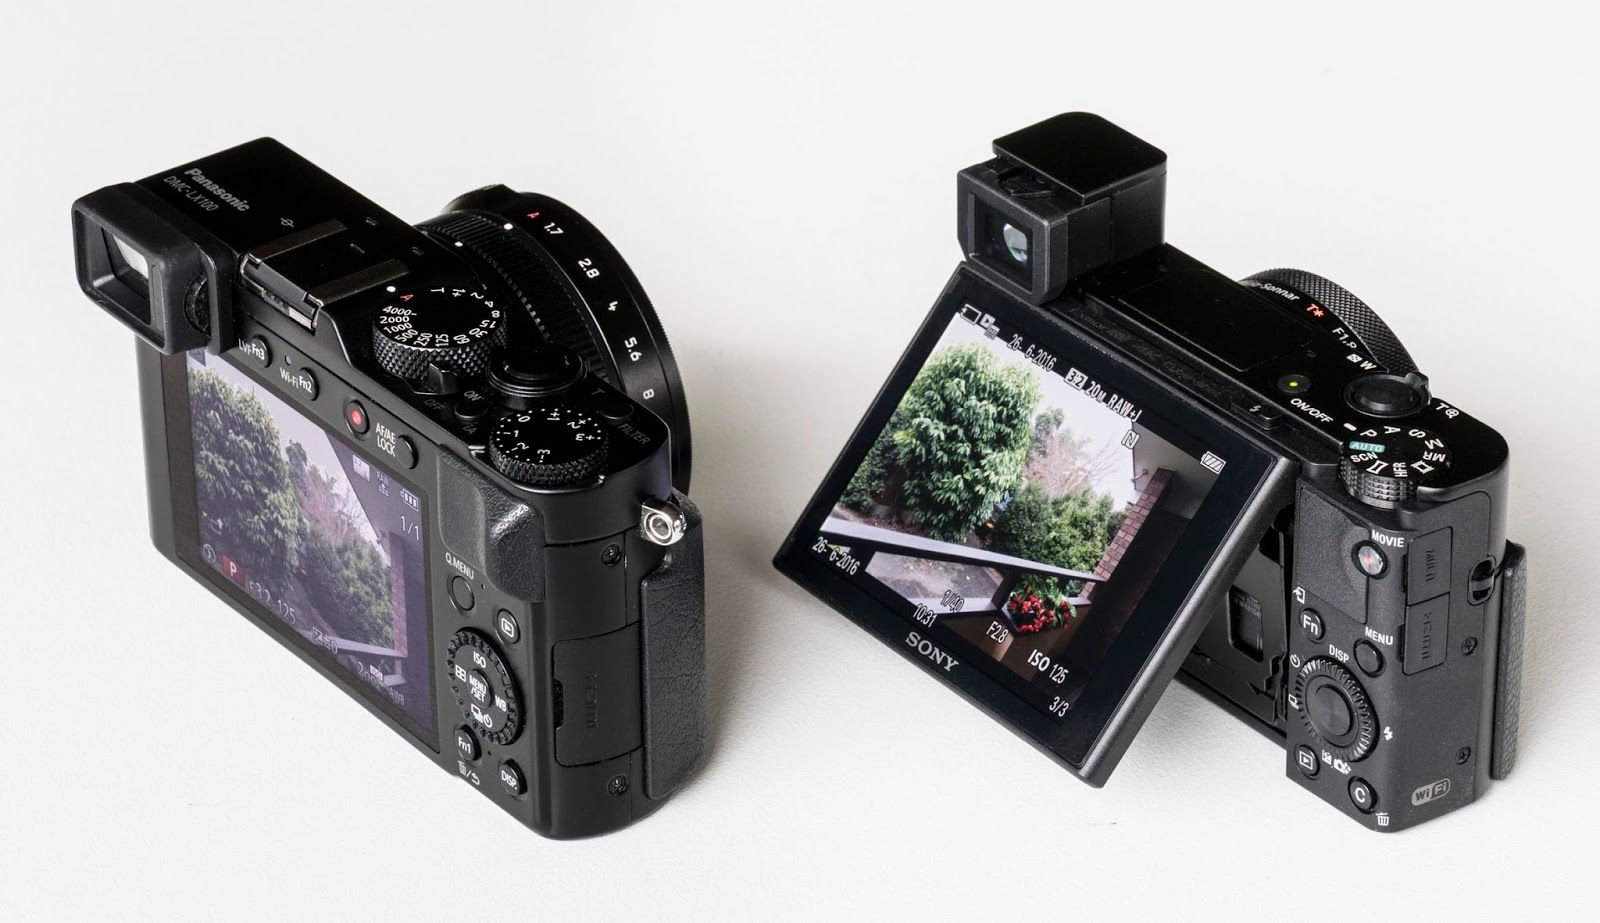 Đây là hai mẫu máy ảnh tốt nhất cho nhu cầu du lịch của bạn